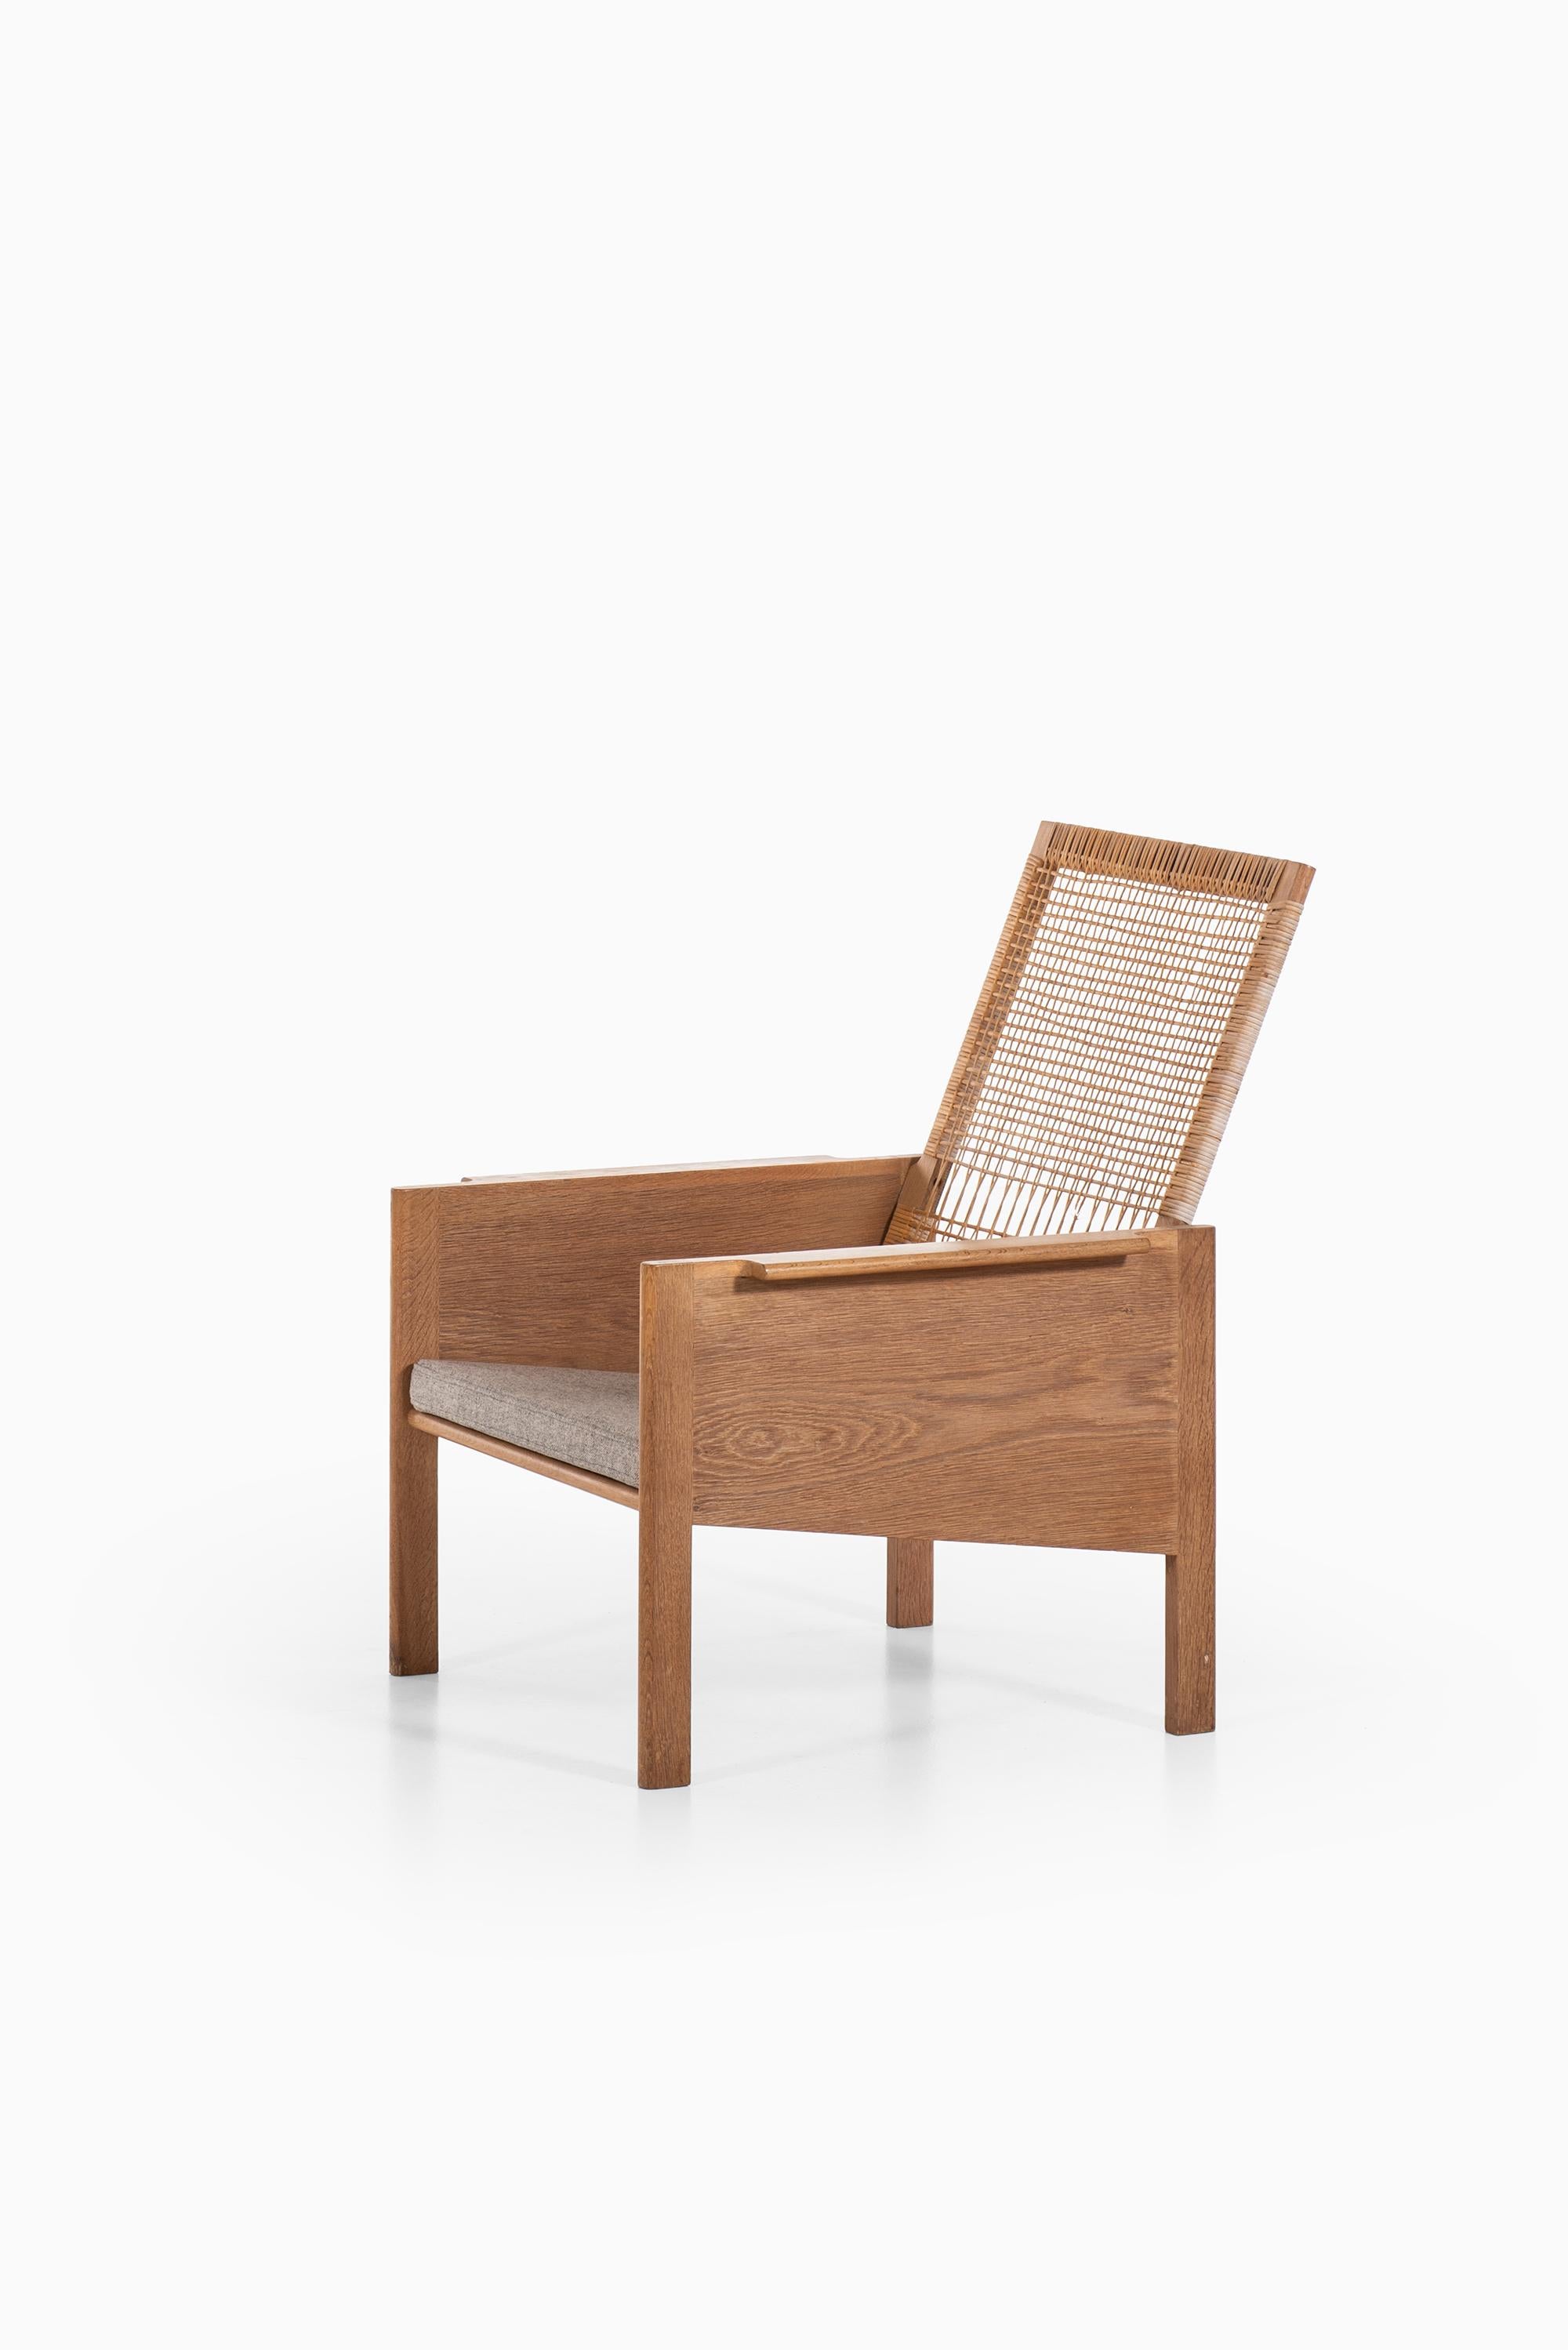 Très rare fauteuil haut de gamme modèle 179 conçu par Kai Kristiansen. Produit par Christian Jensen Møbelsnedkeri au Danemark.